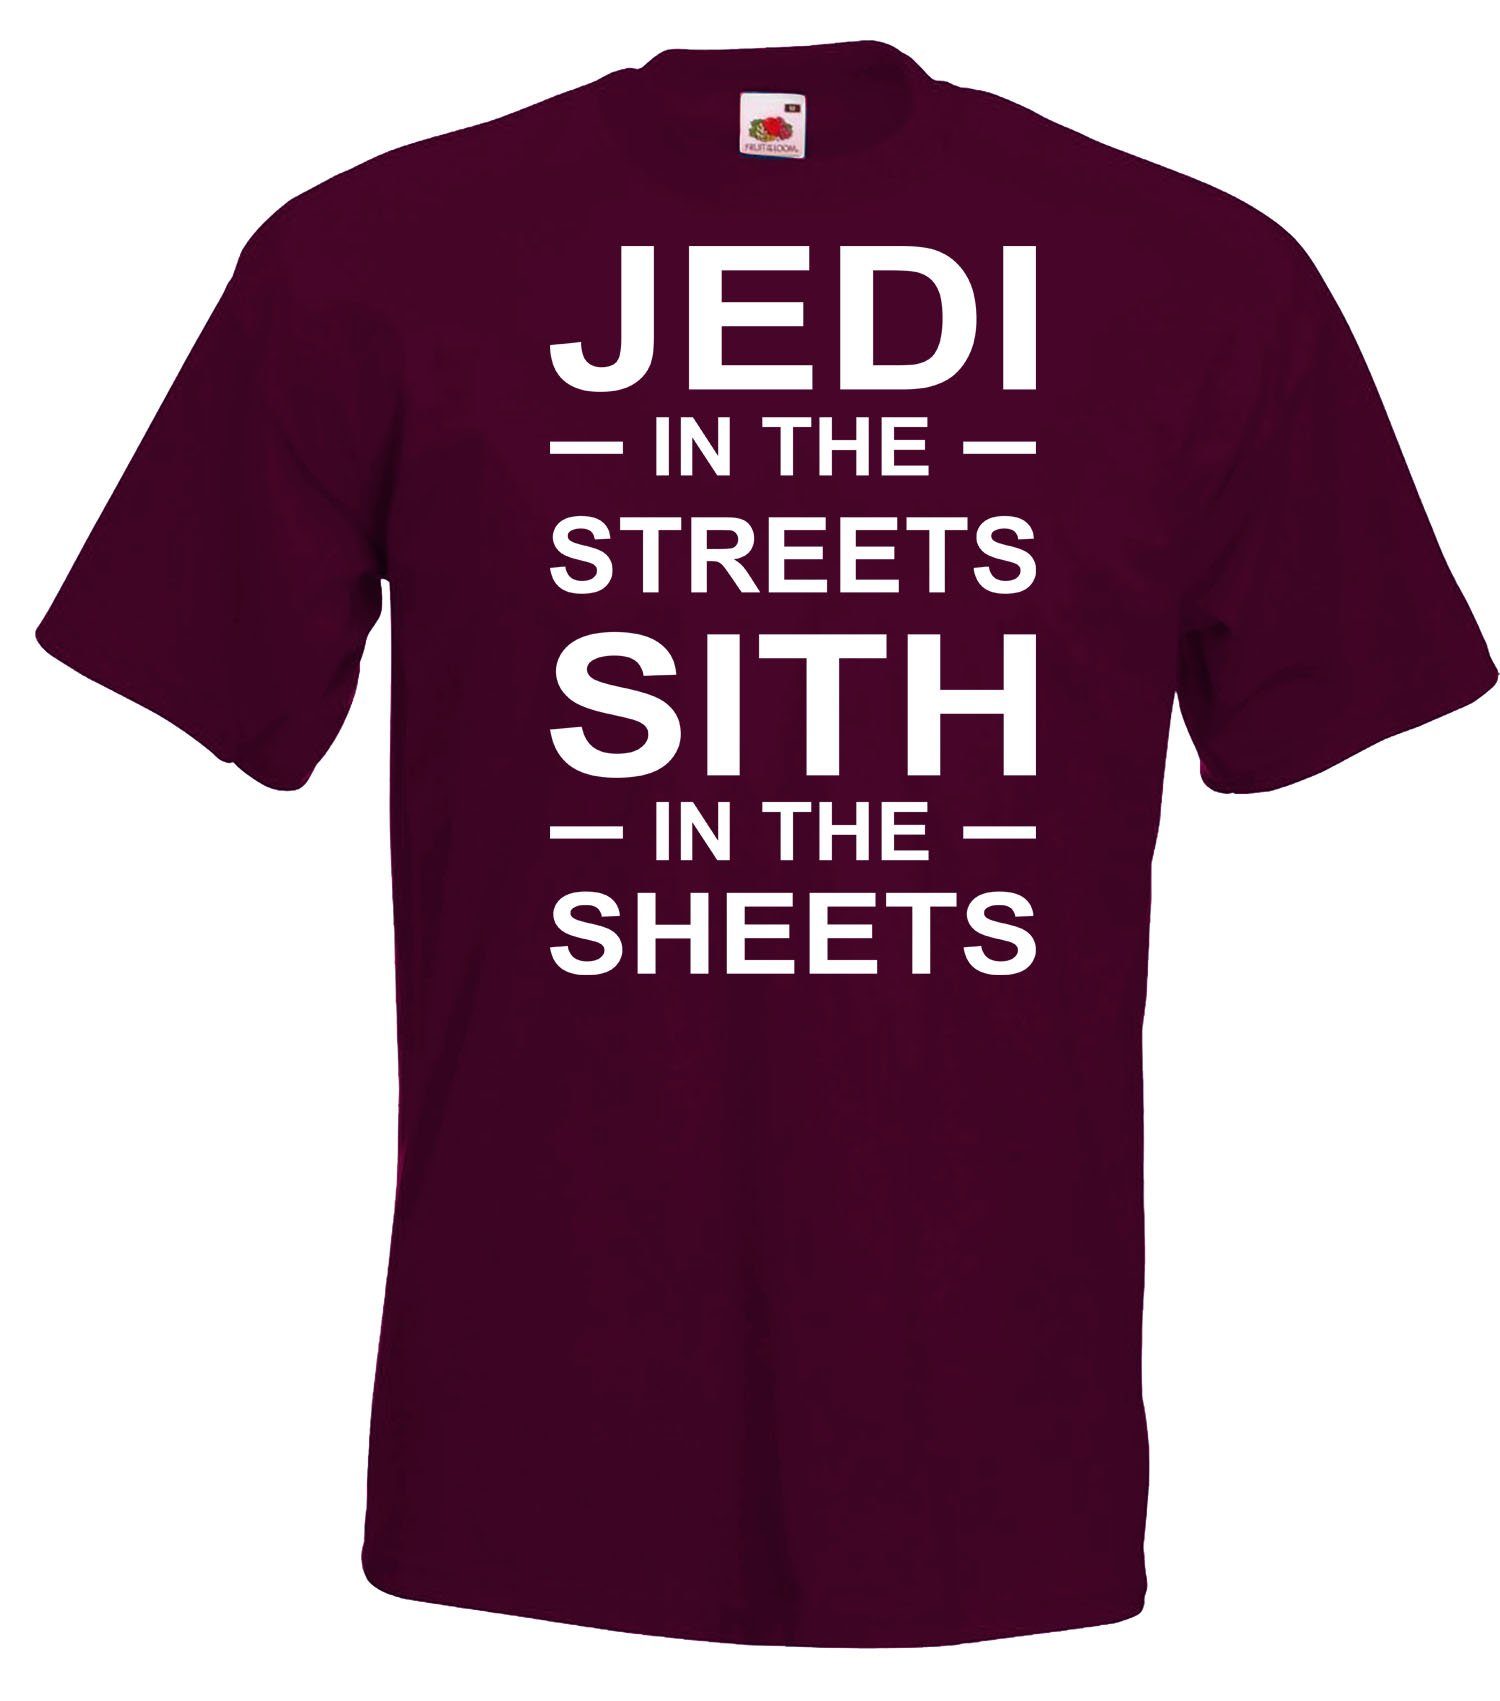 Youth Shirt Frontprint in Burgund trendigem Designz Streets Herren T-Shirt the mit Jedi Serien